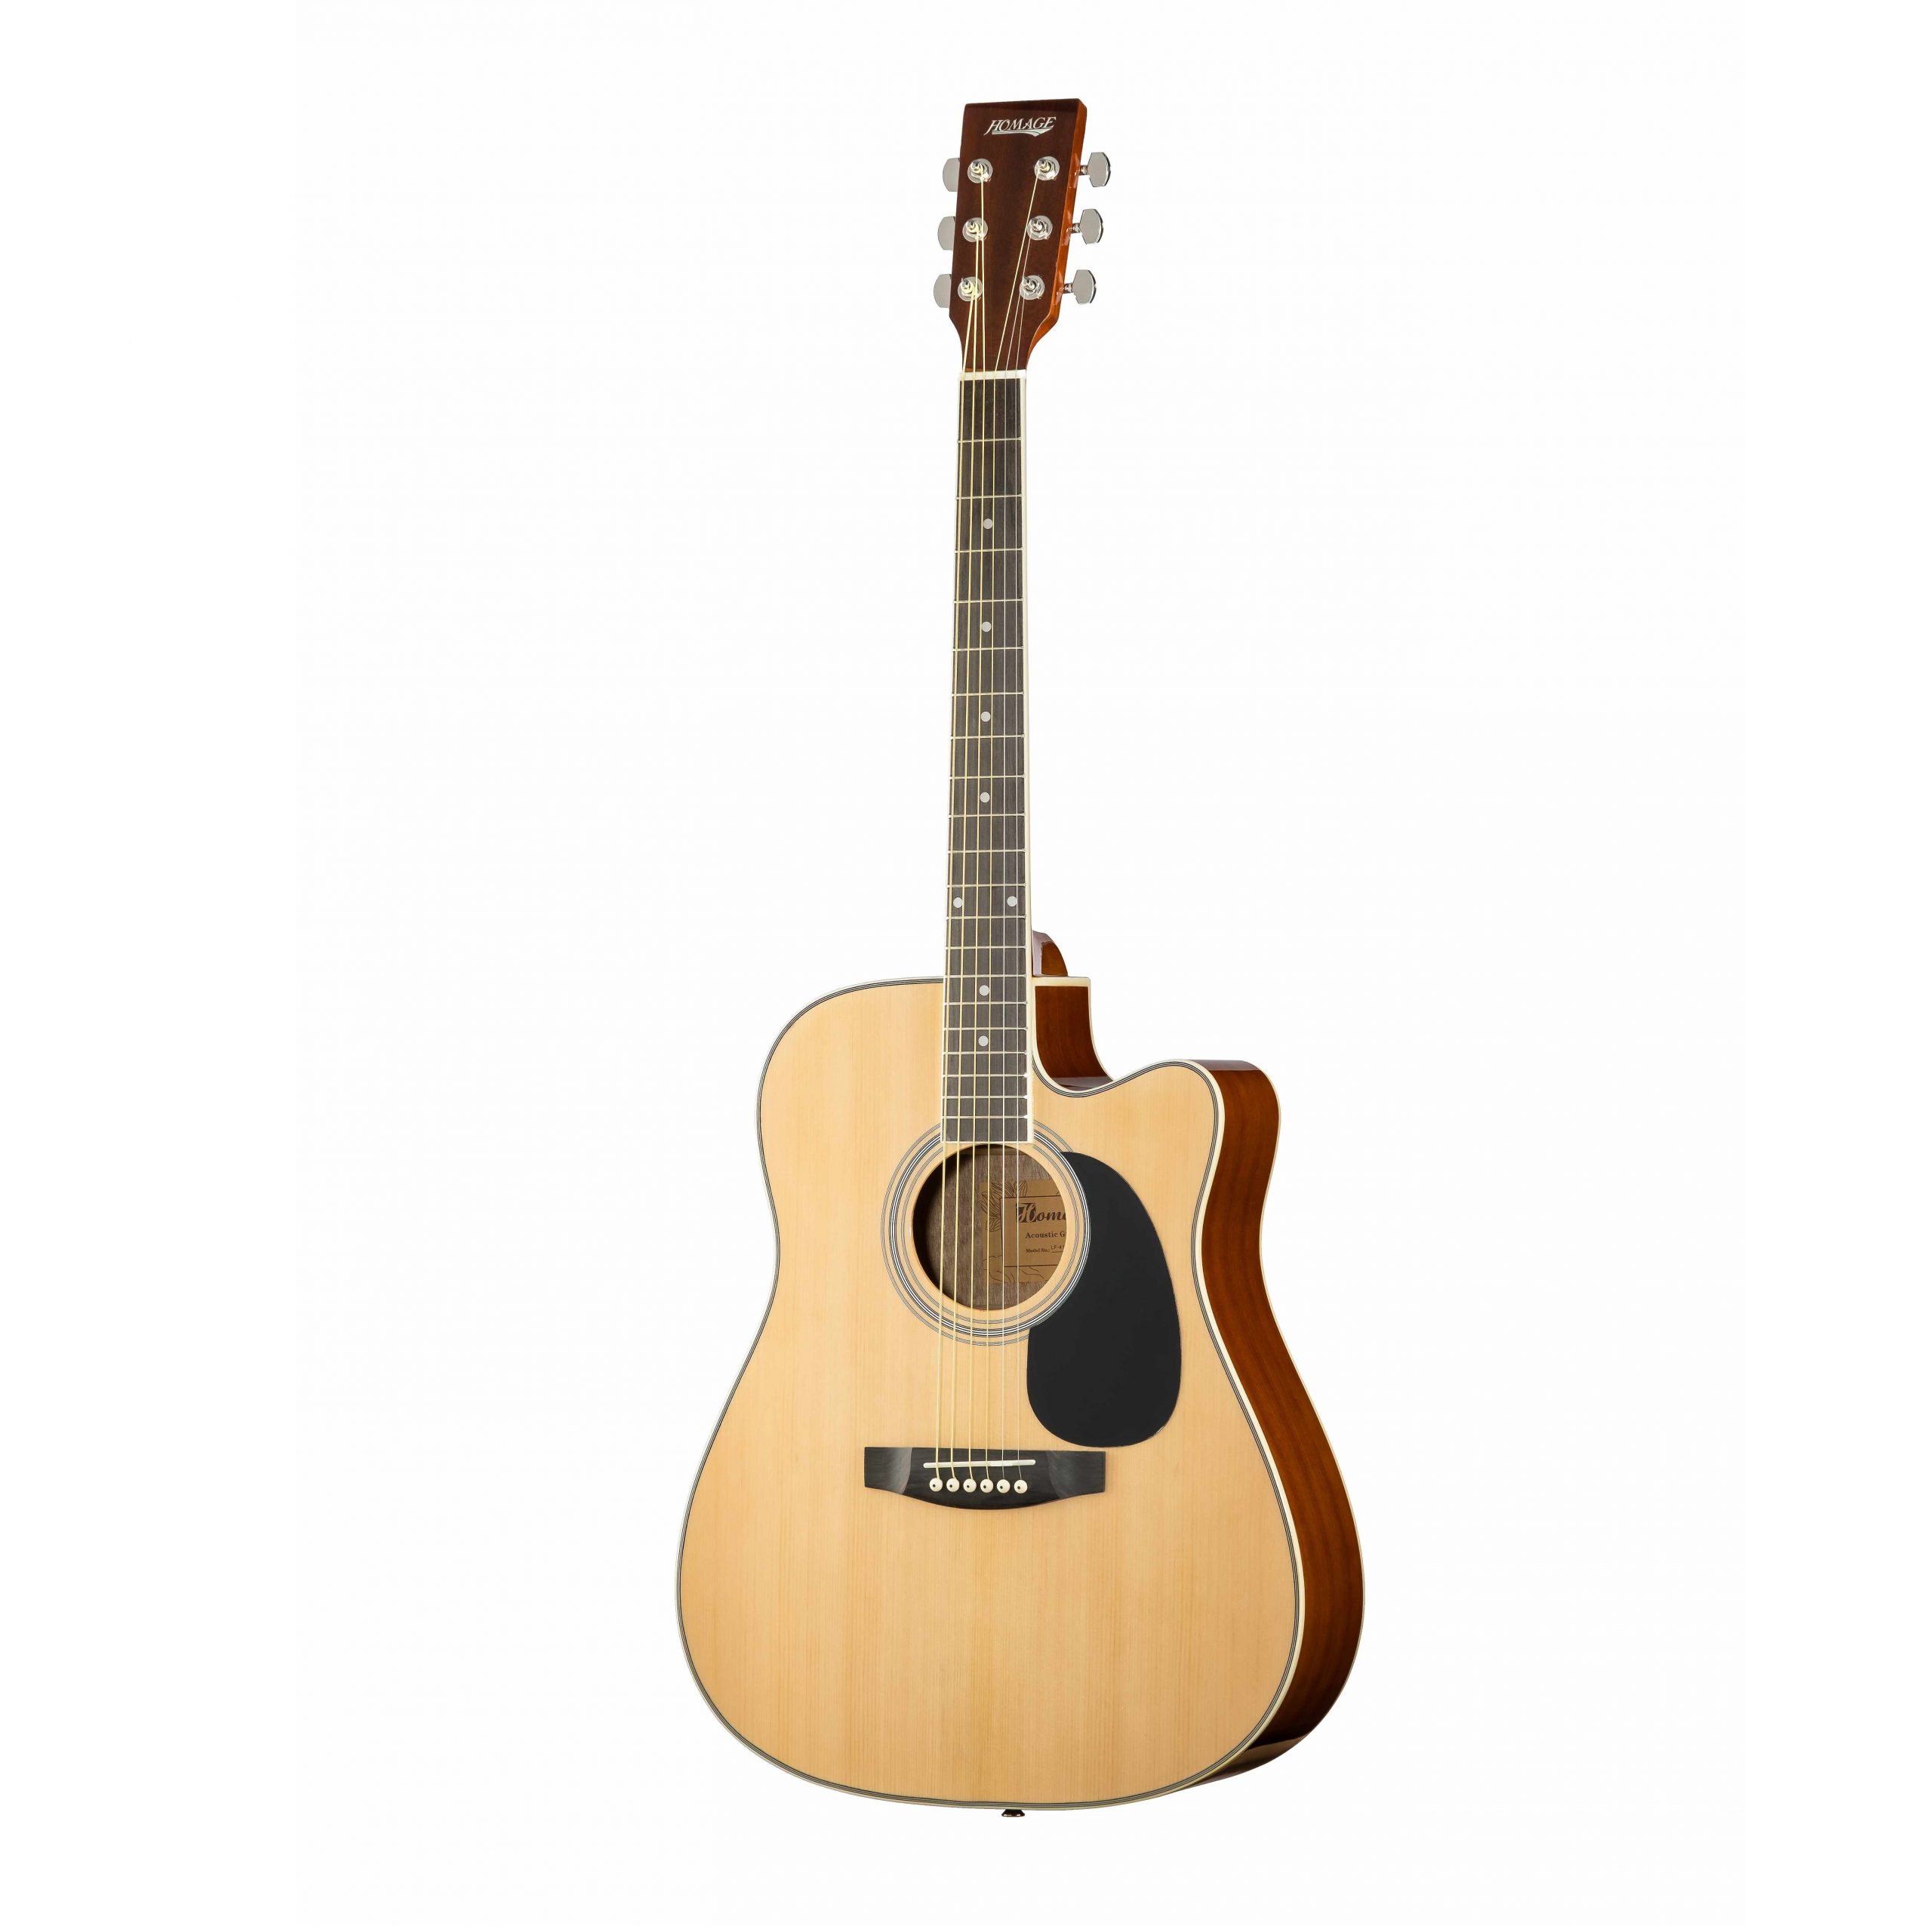 Акустические гитары Homage LF-4121C-N гитара акустическая дерево 97см с вырезом